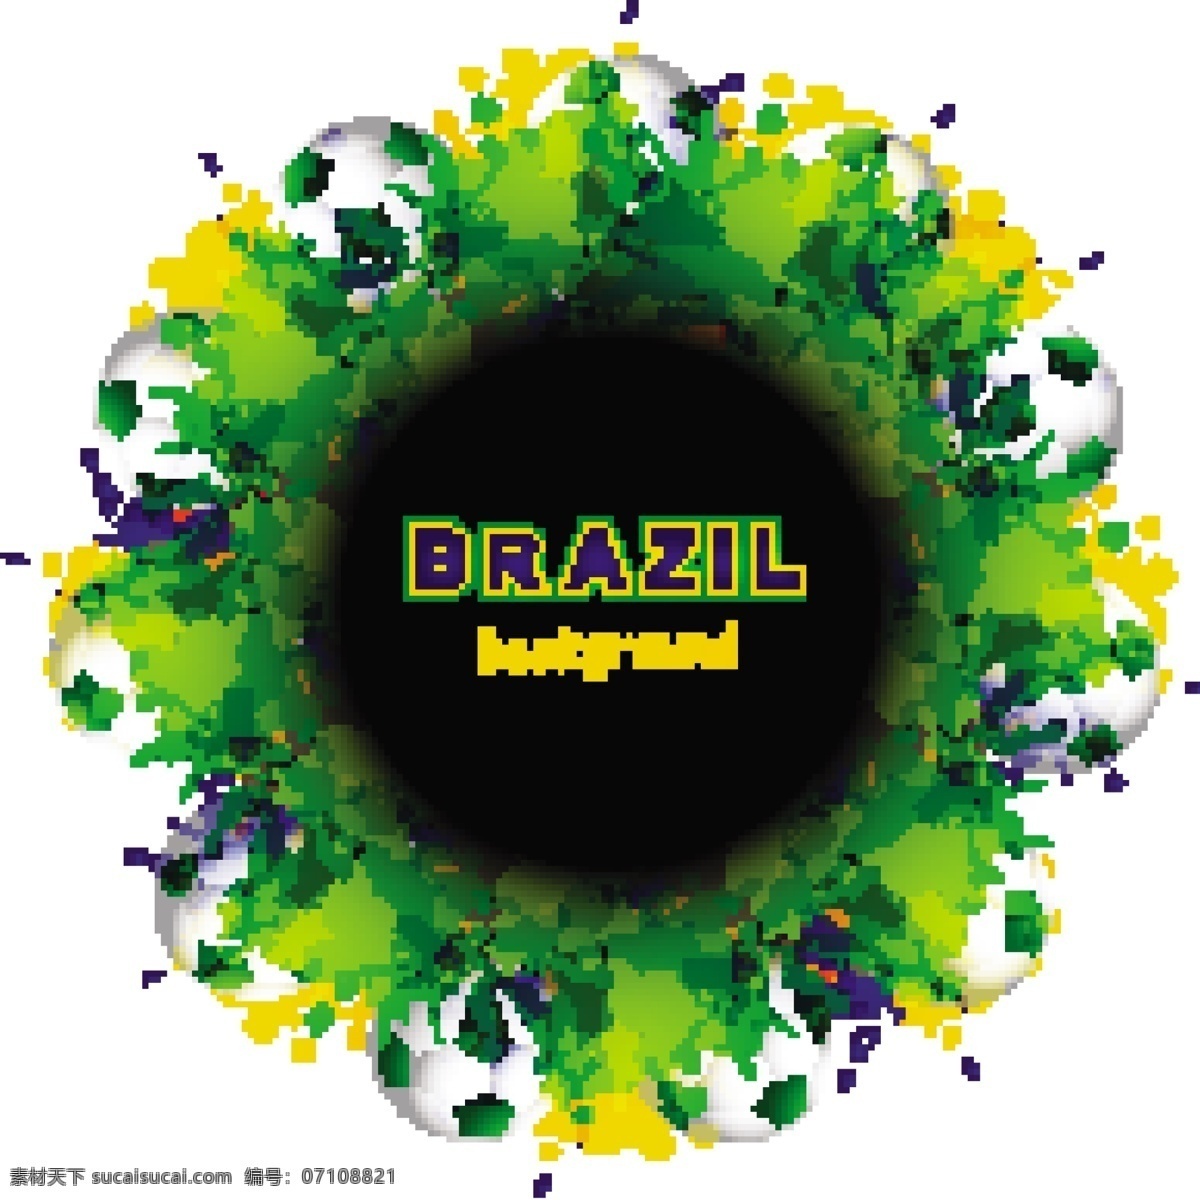 绿色 涂鸦 足球 世界杯 背景 模板下载 海报 体育运动 生活百科 矢量素材 白色